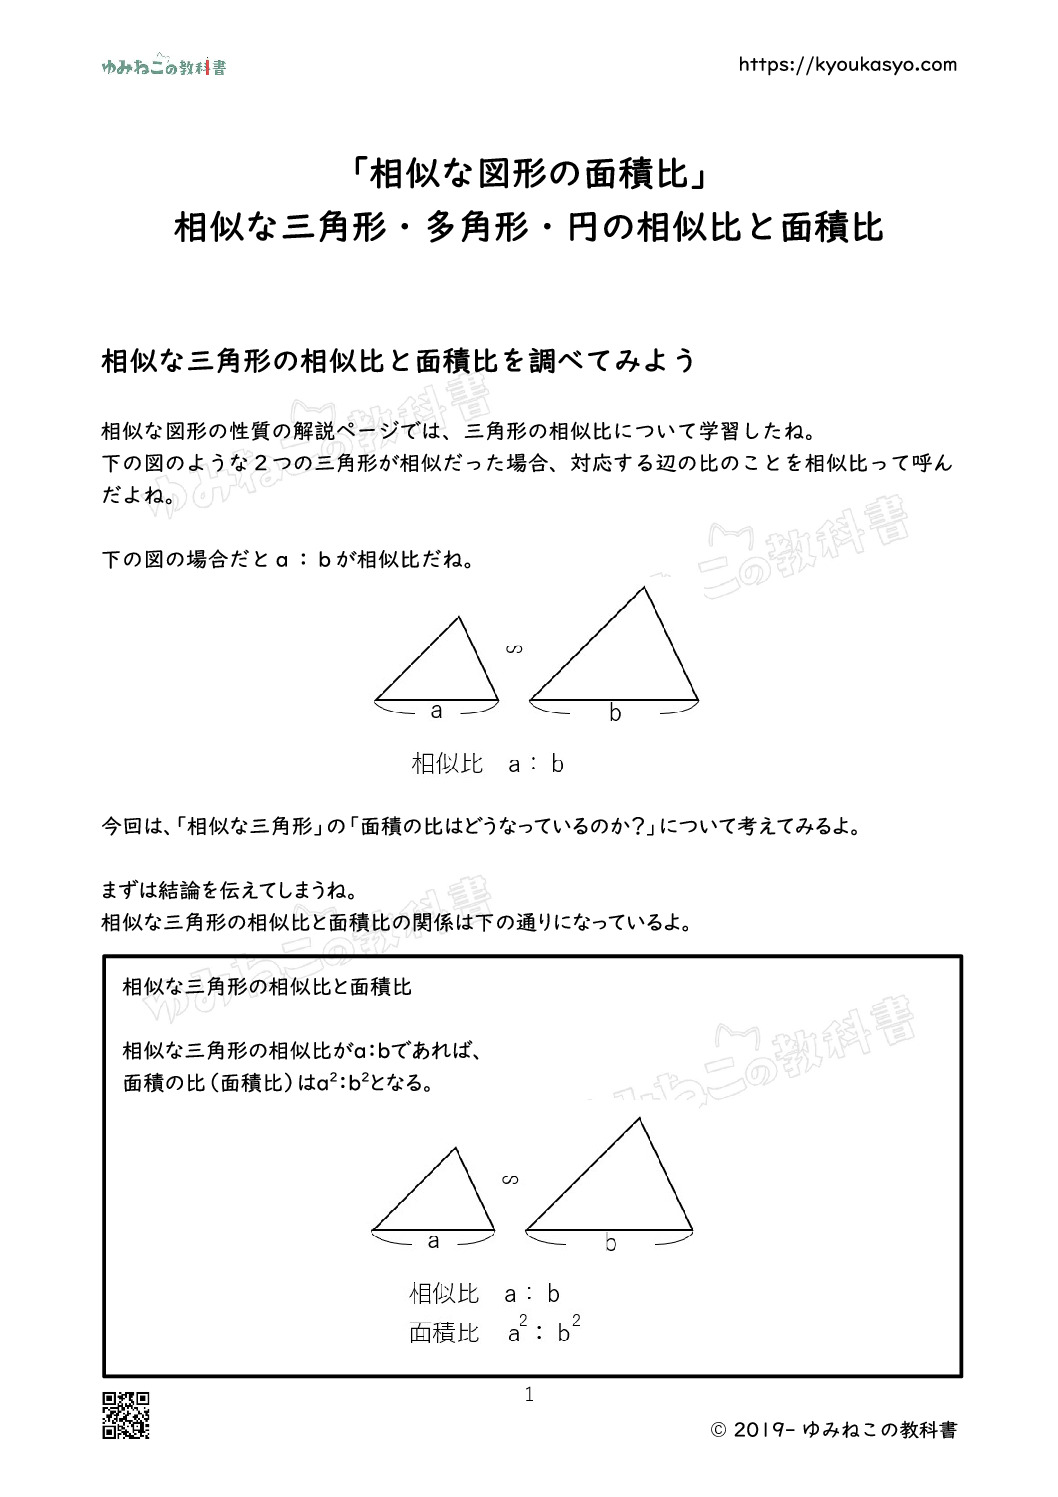 「相似な図形の面積比」 相似な三角形・多角形・円の相似比と面積比